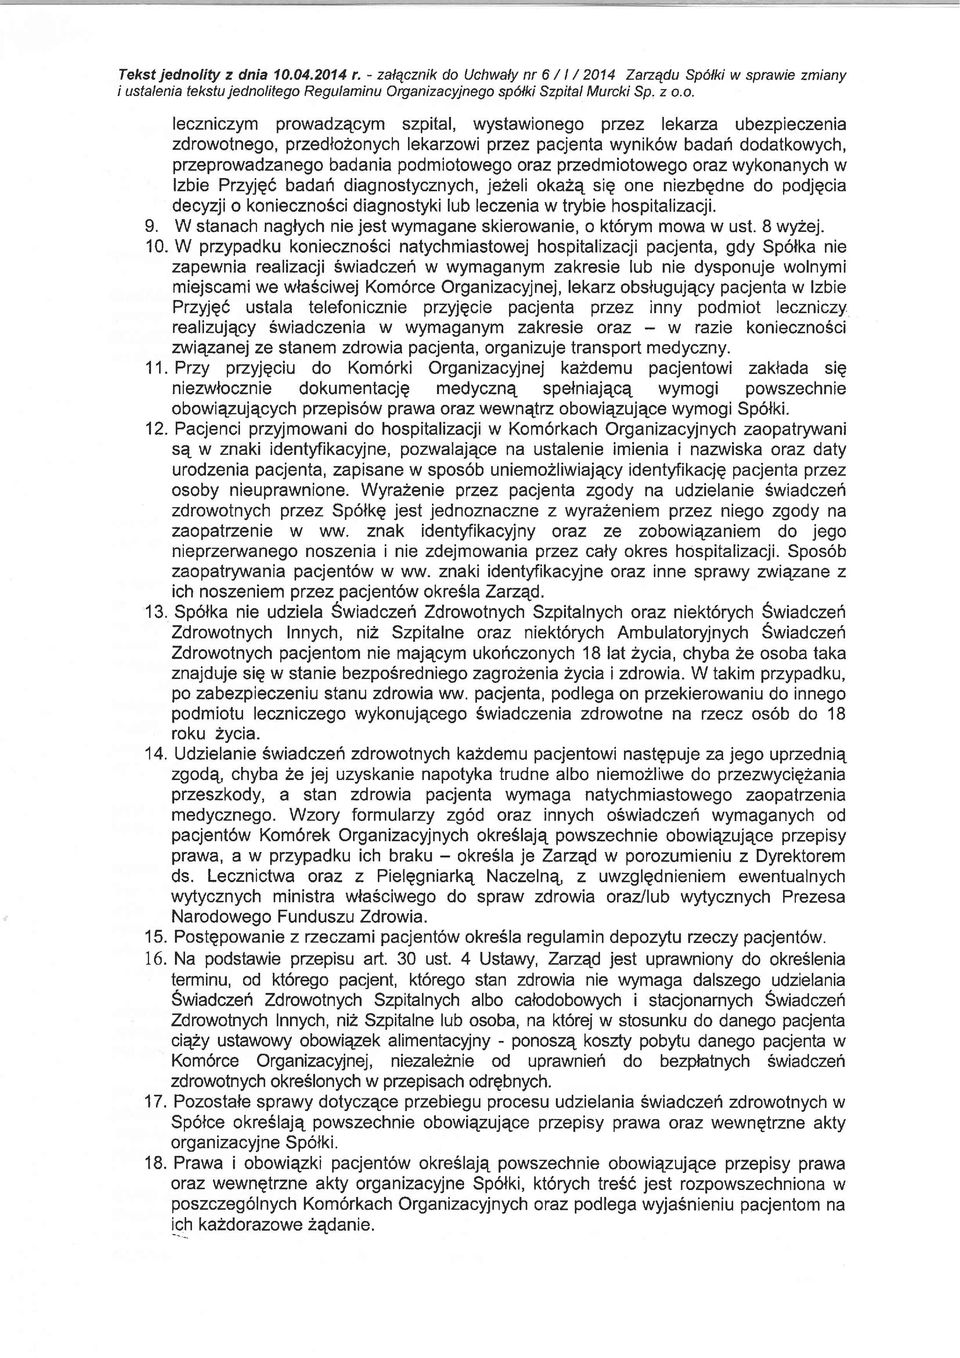 Uchwaly nr6/l/2014 Zazqdu Sp6lki w sprawie zmiany i ustalenia tekstu jednol